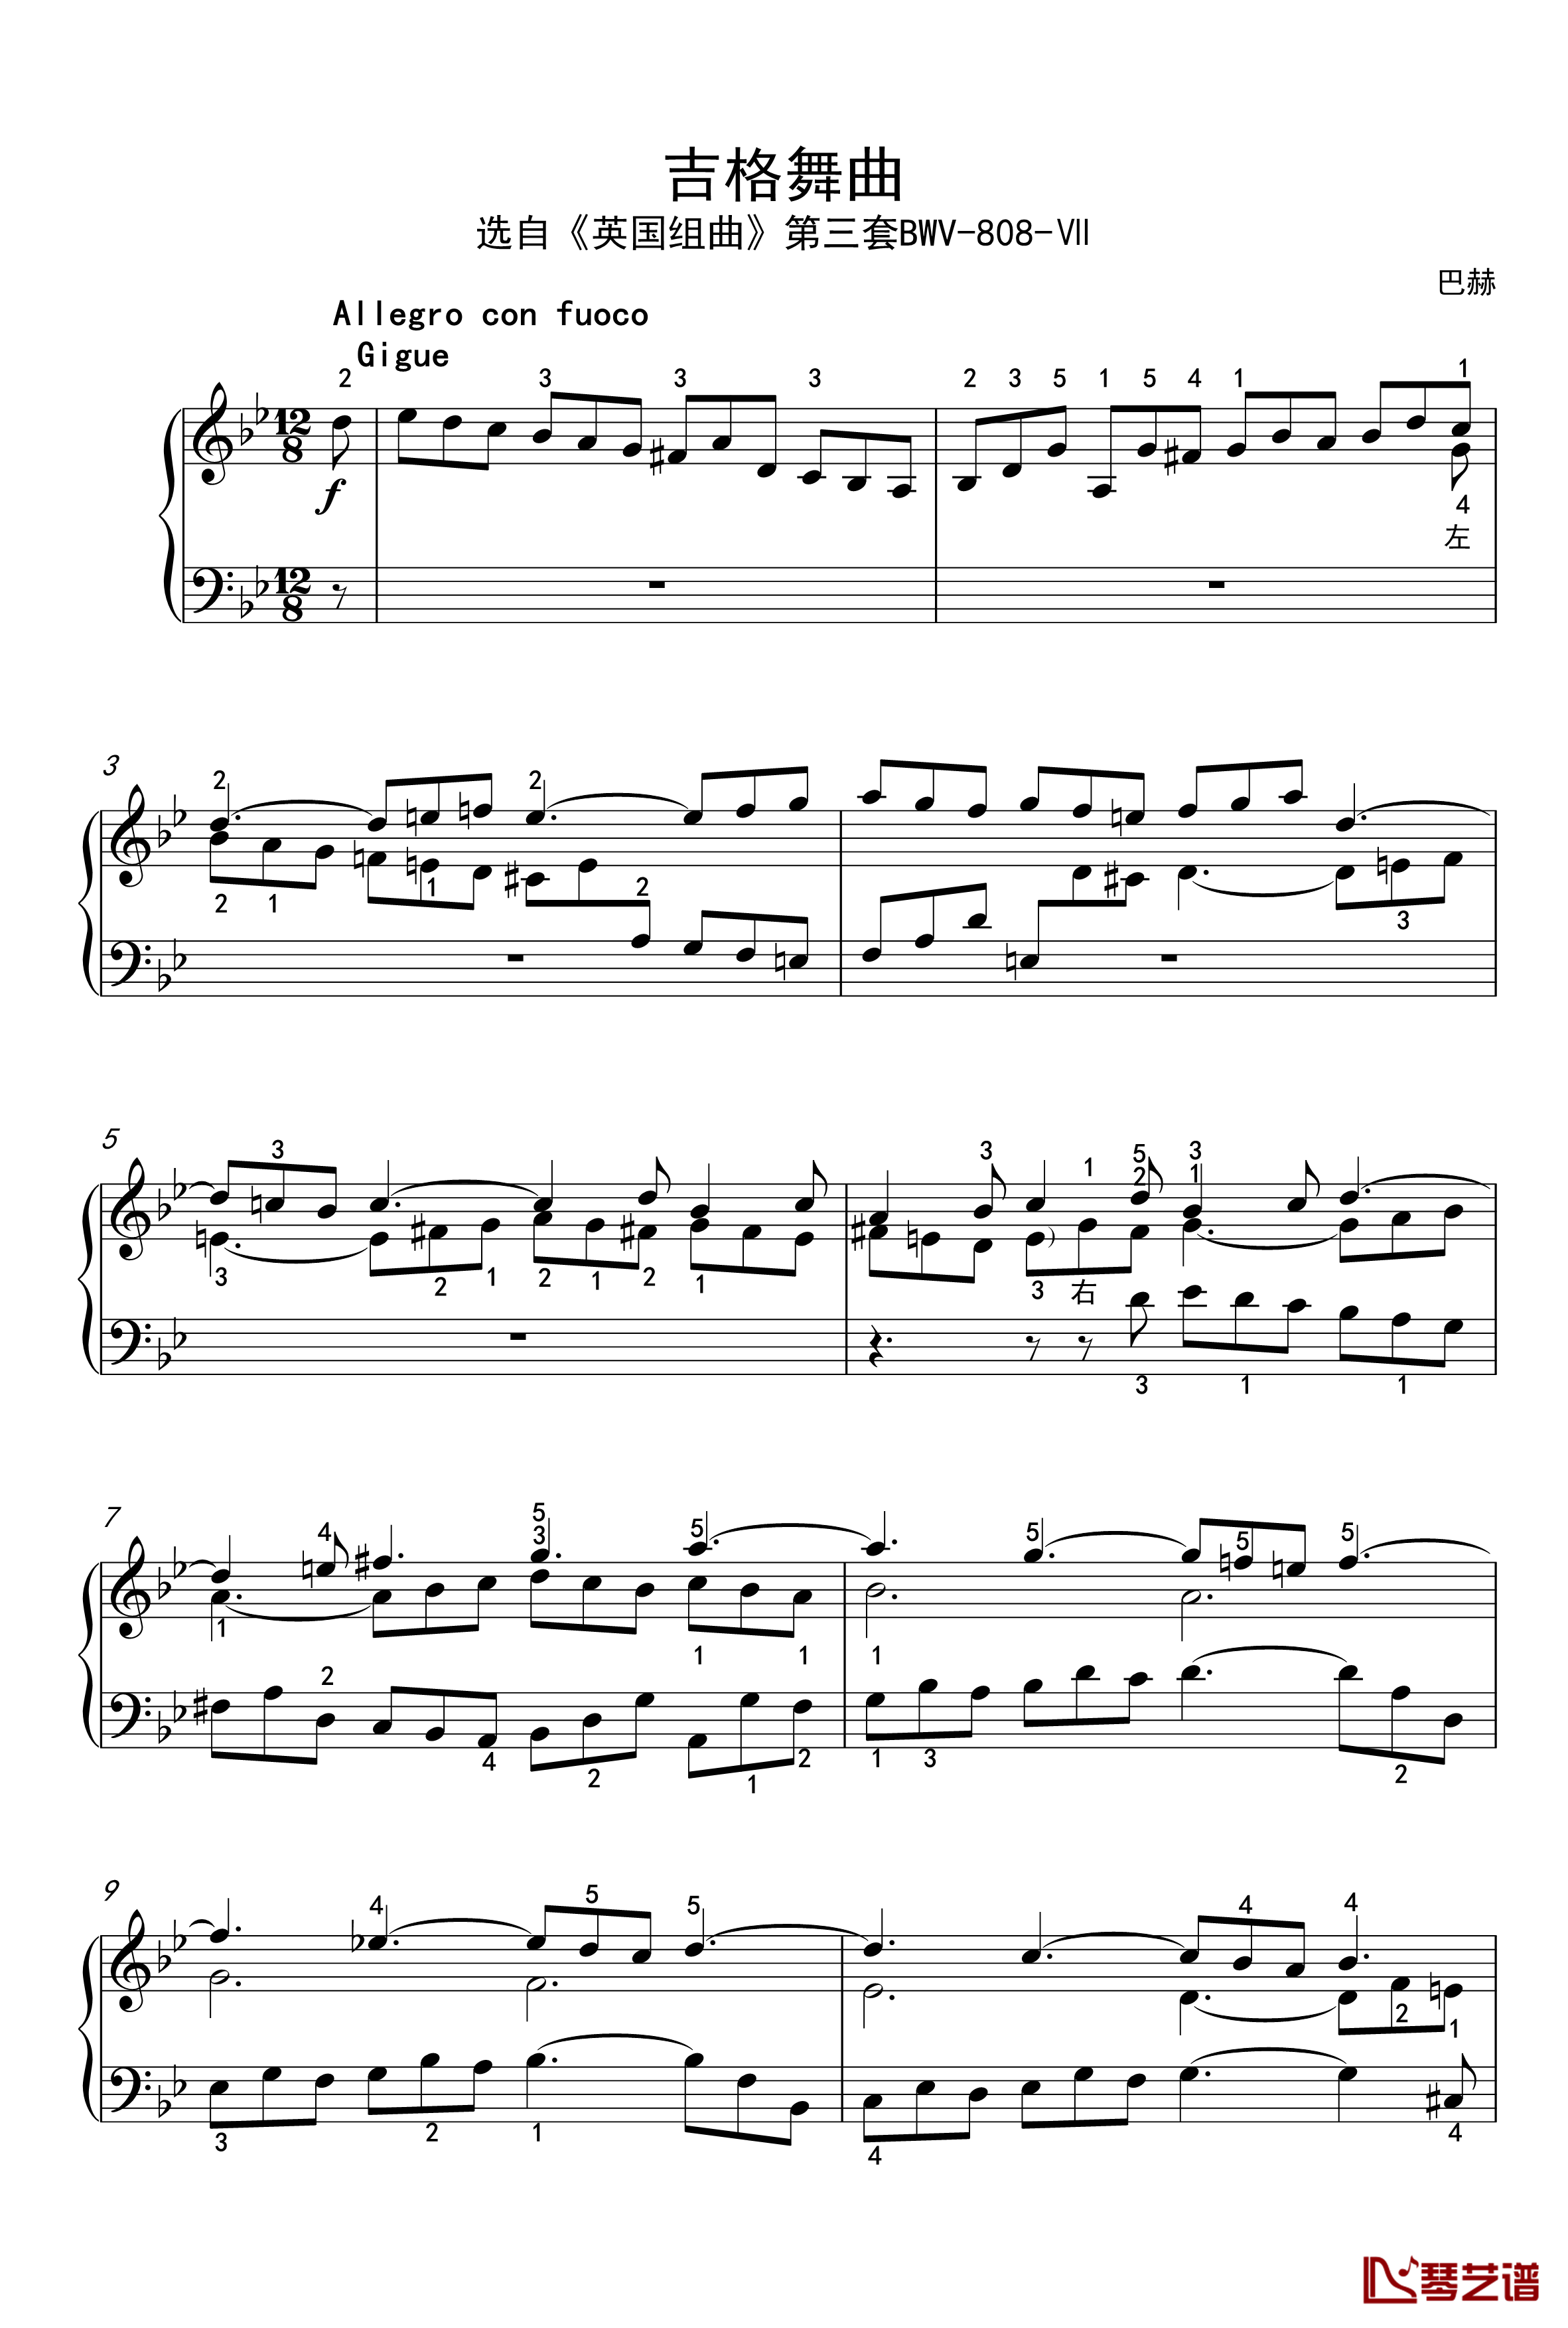 吉格舞曲钢琴谱-英国组曲-BWV-808-7-巴赫-P.E.Bach1